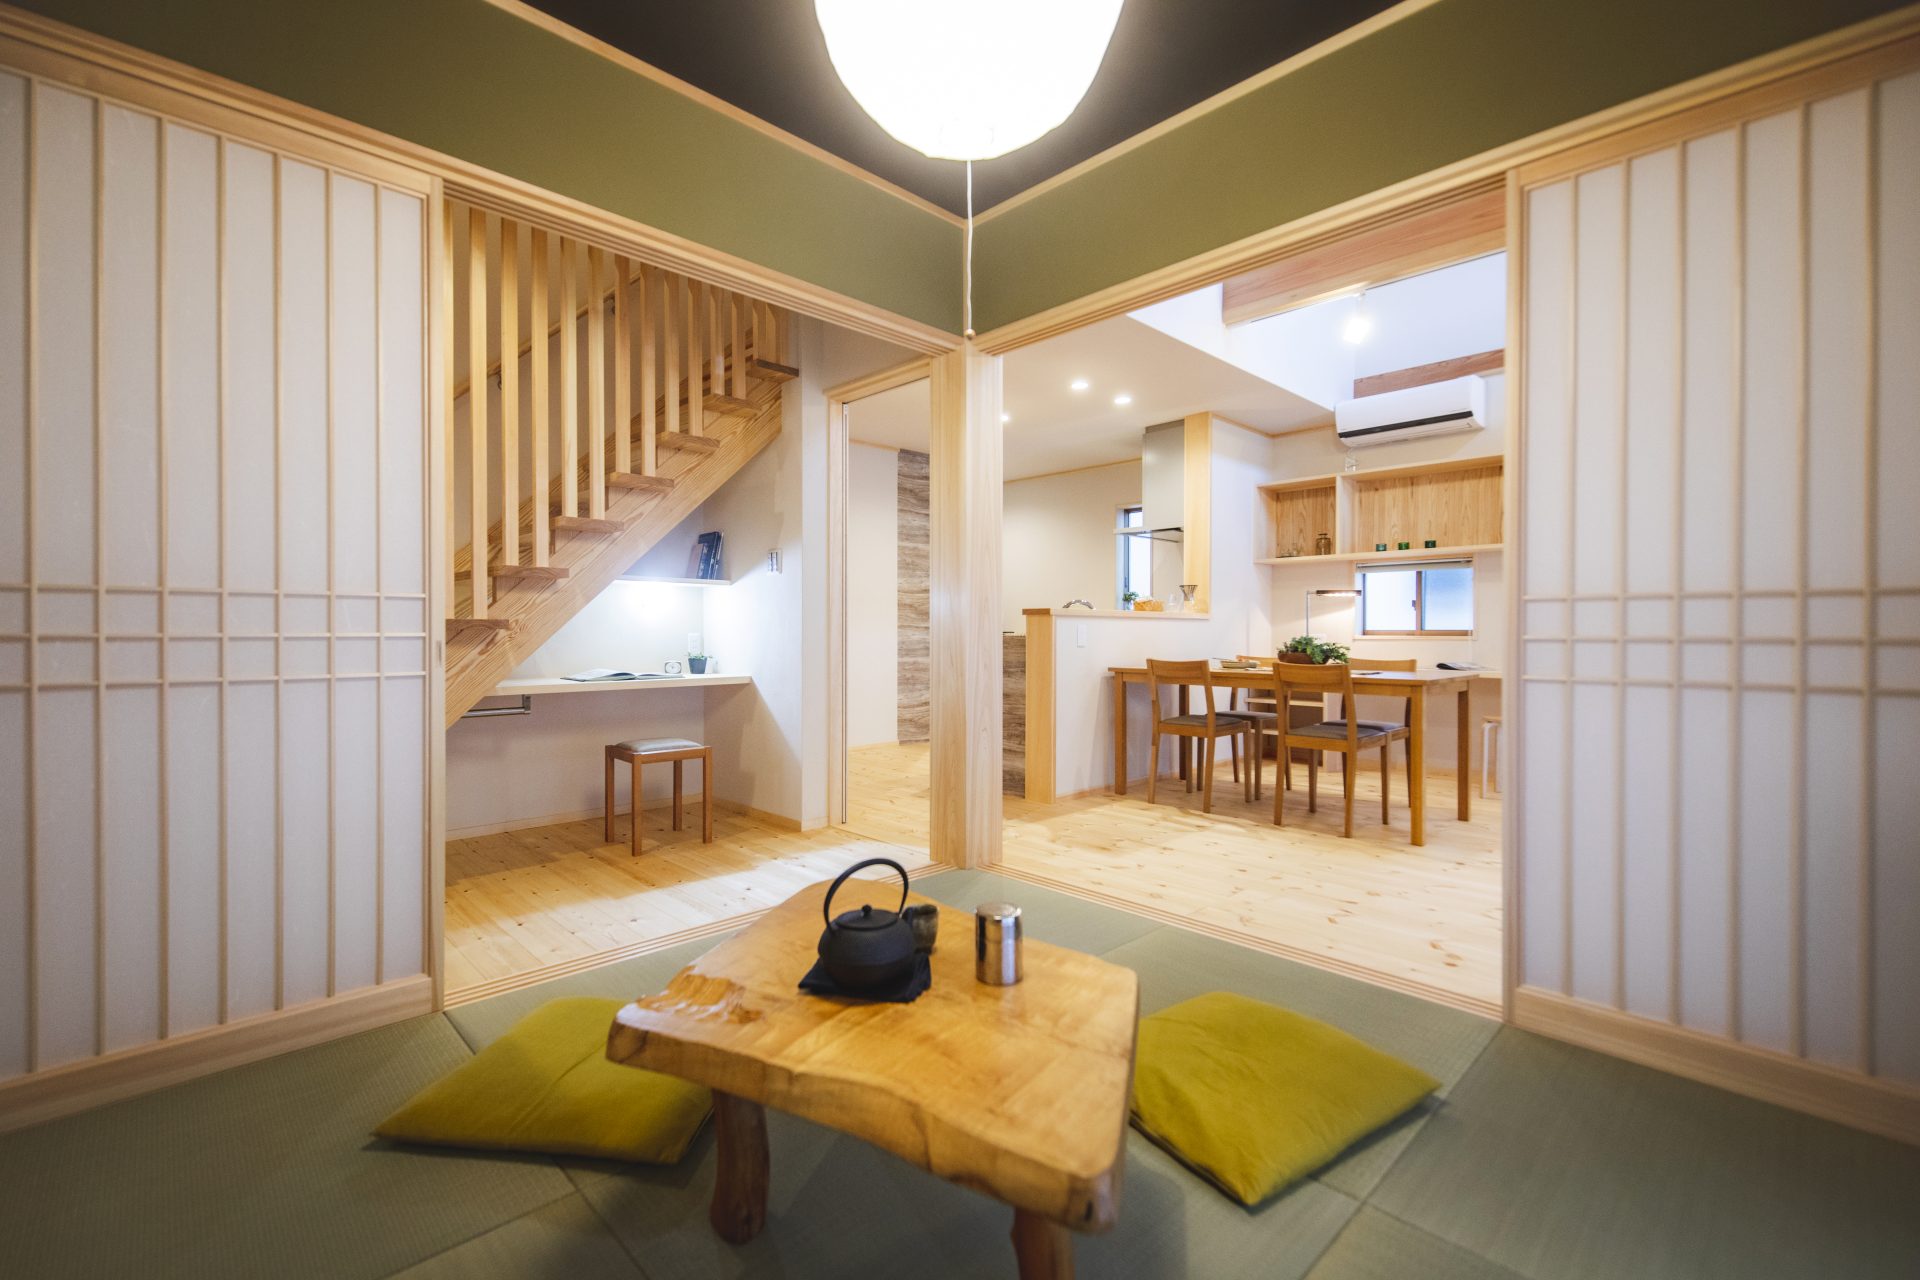 Căn nhà gỗ xây dựng theo lối kiến trúc Nhật Bản với 1 trệt 1 lửng đủ bình yên cho gia đình trẻ - Ảnh 9.